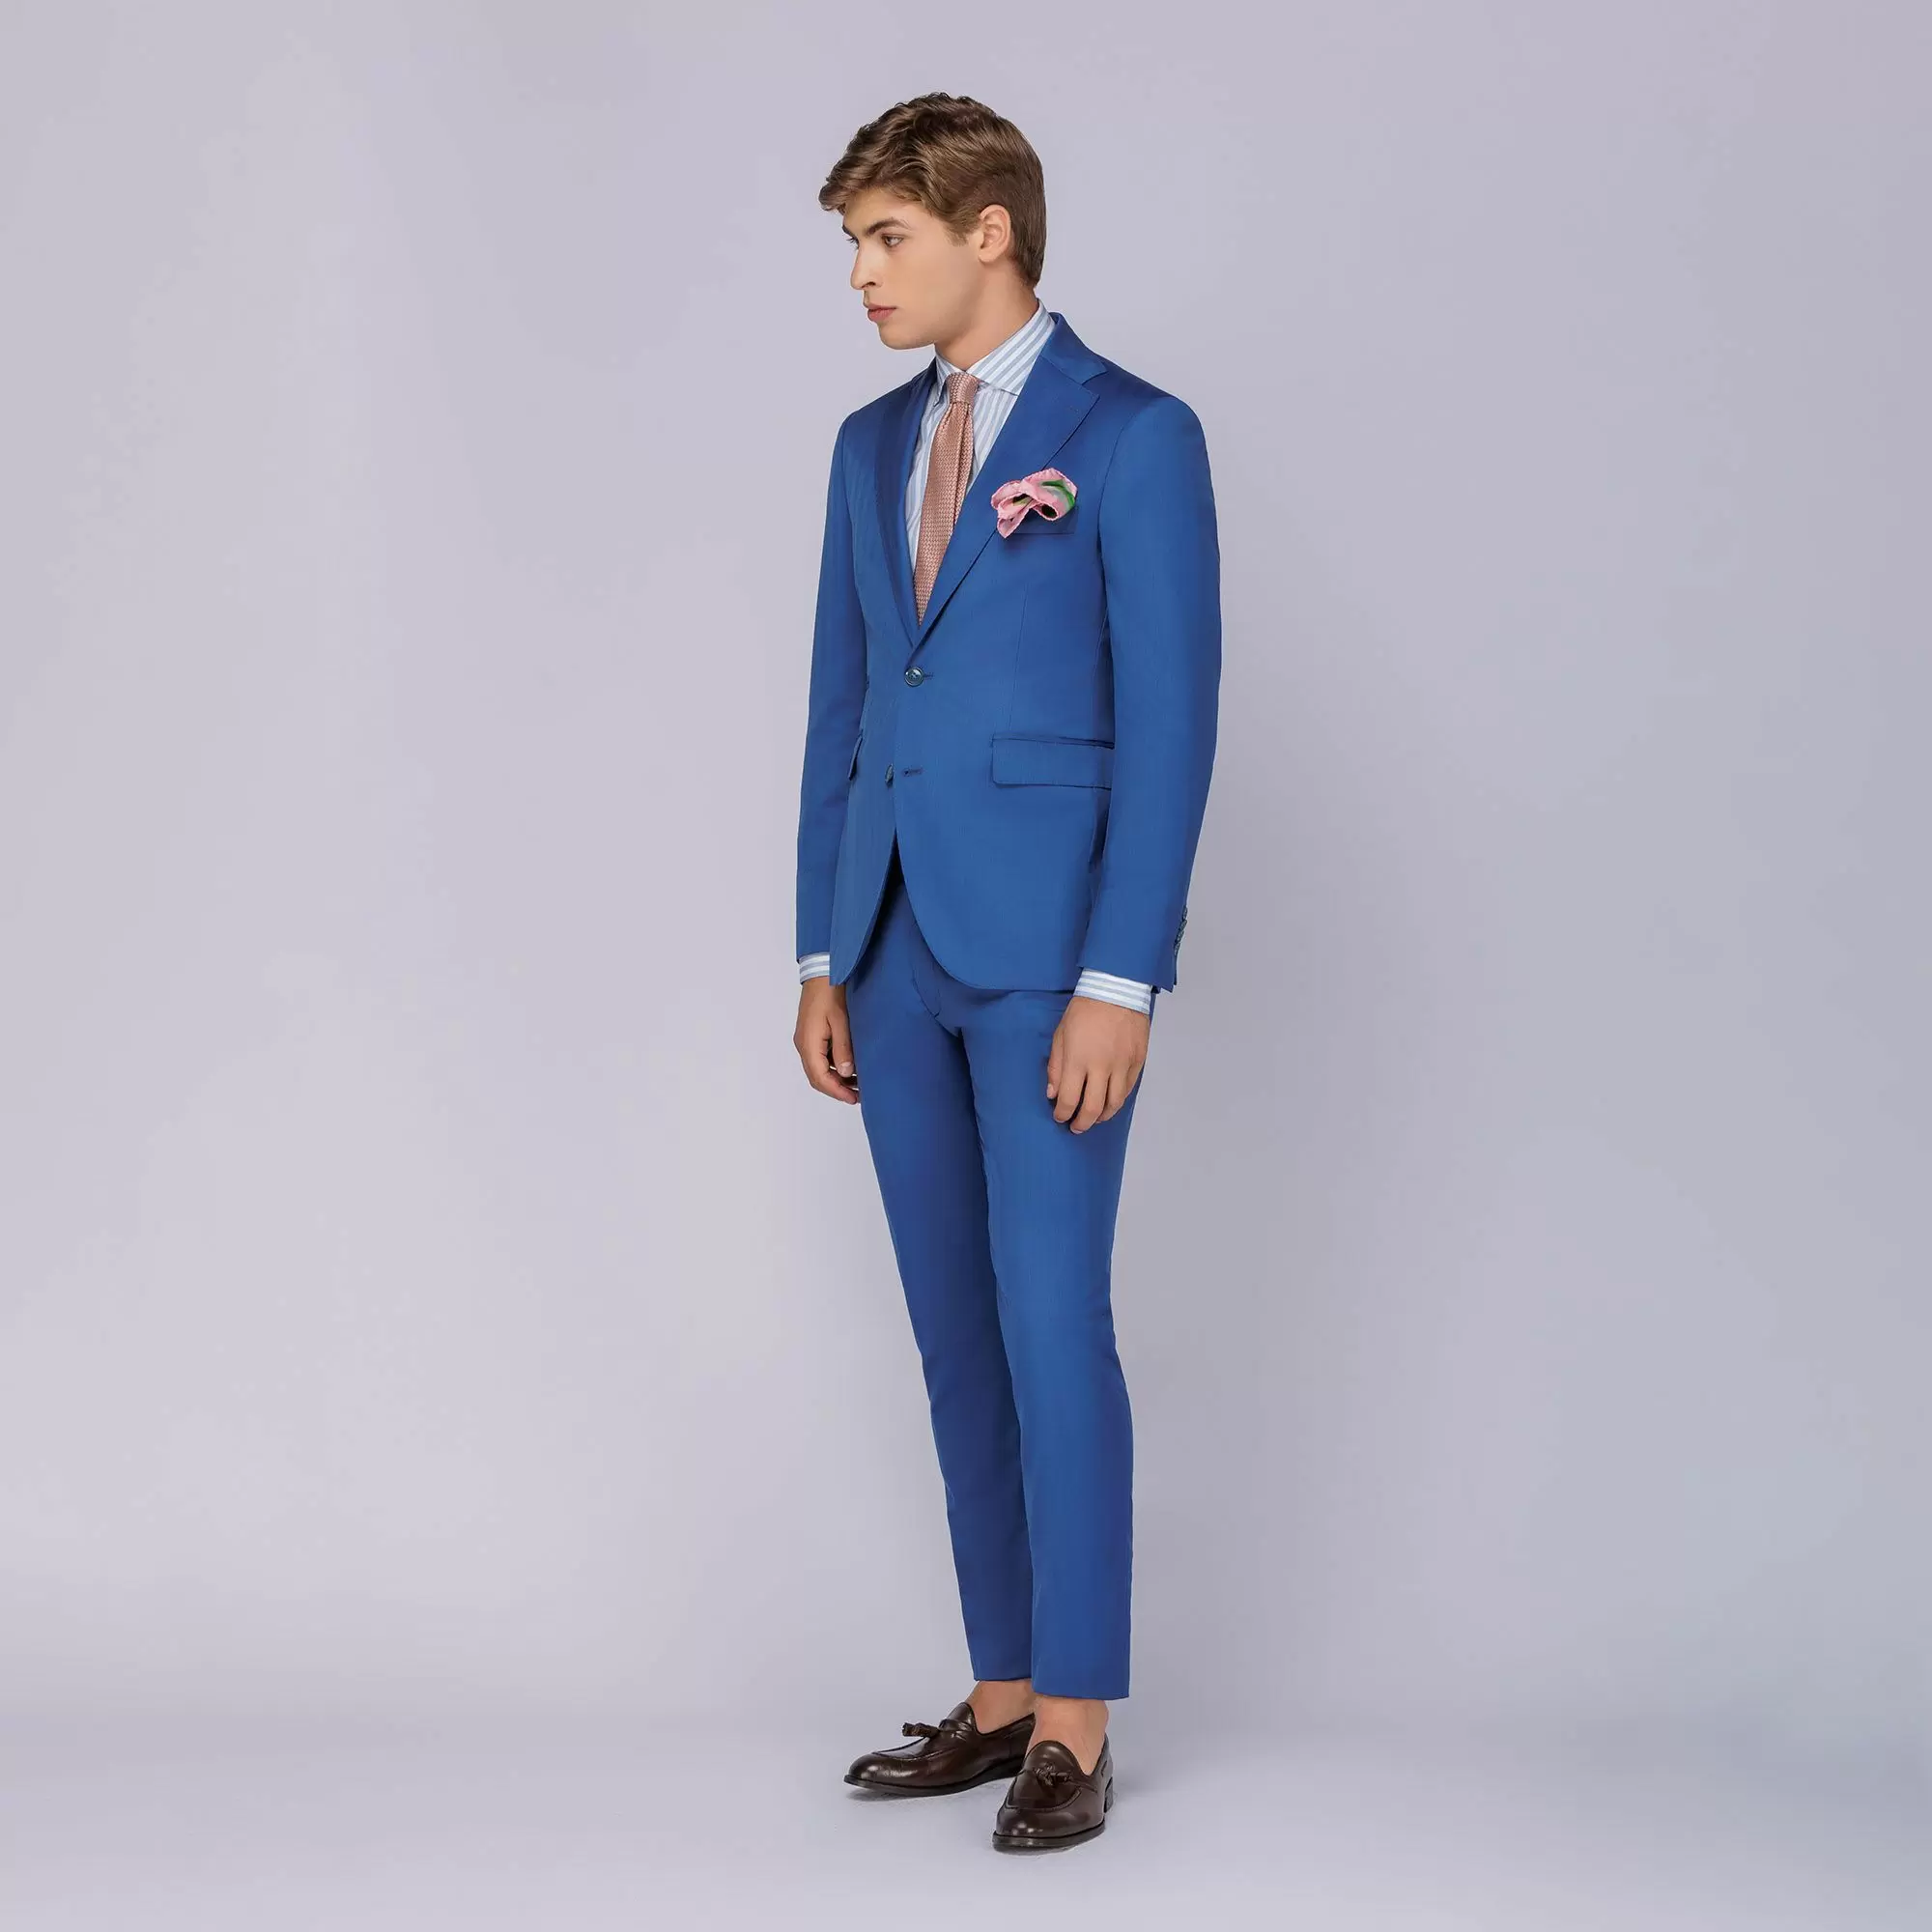 Ανδρικό Κοστούμι Μάλλινο Solaro Μπλε Tailor Italian Wear